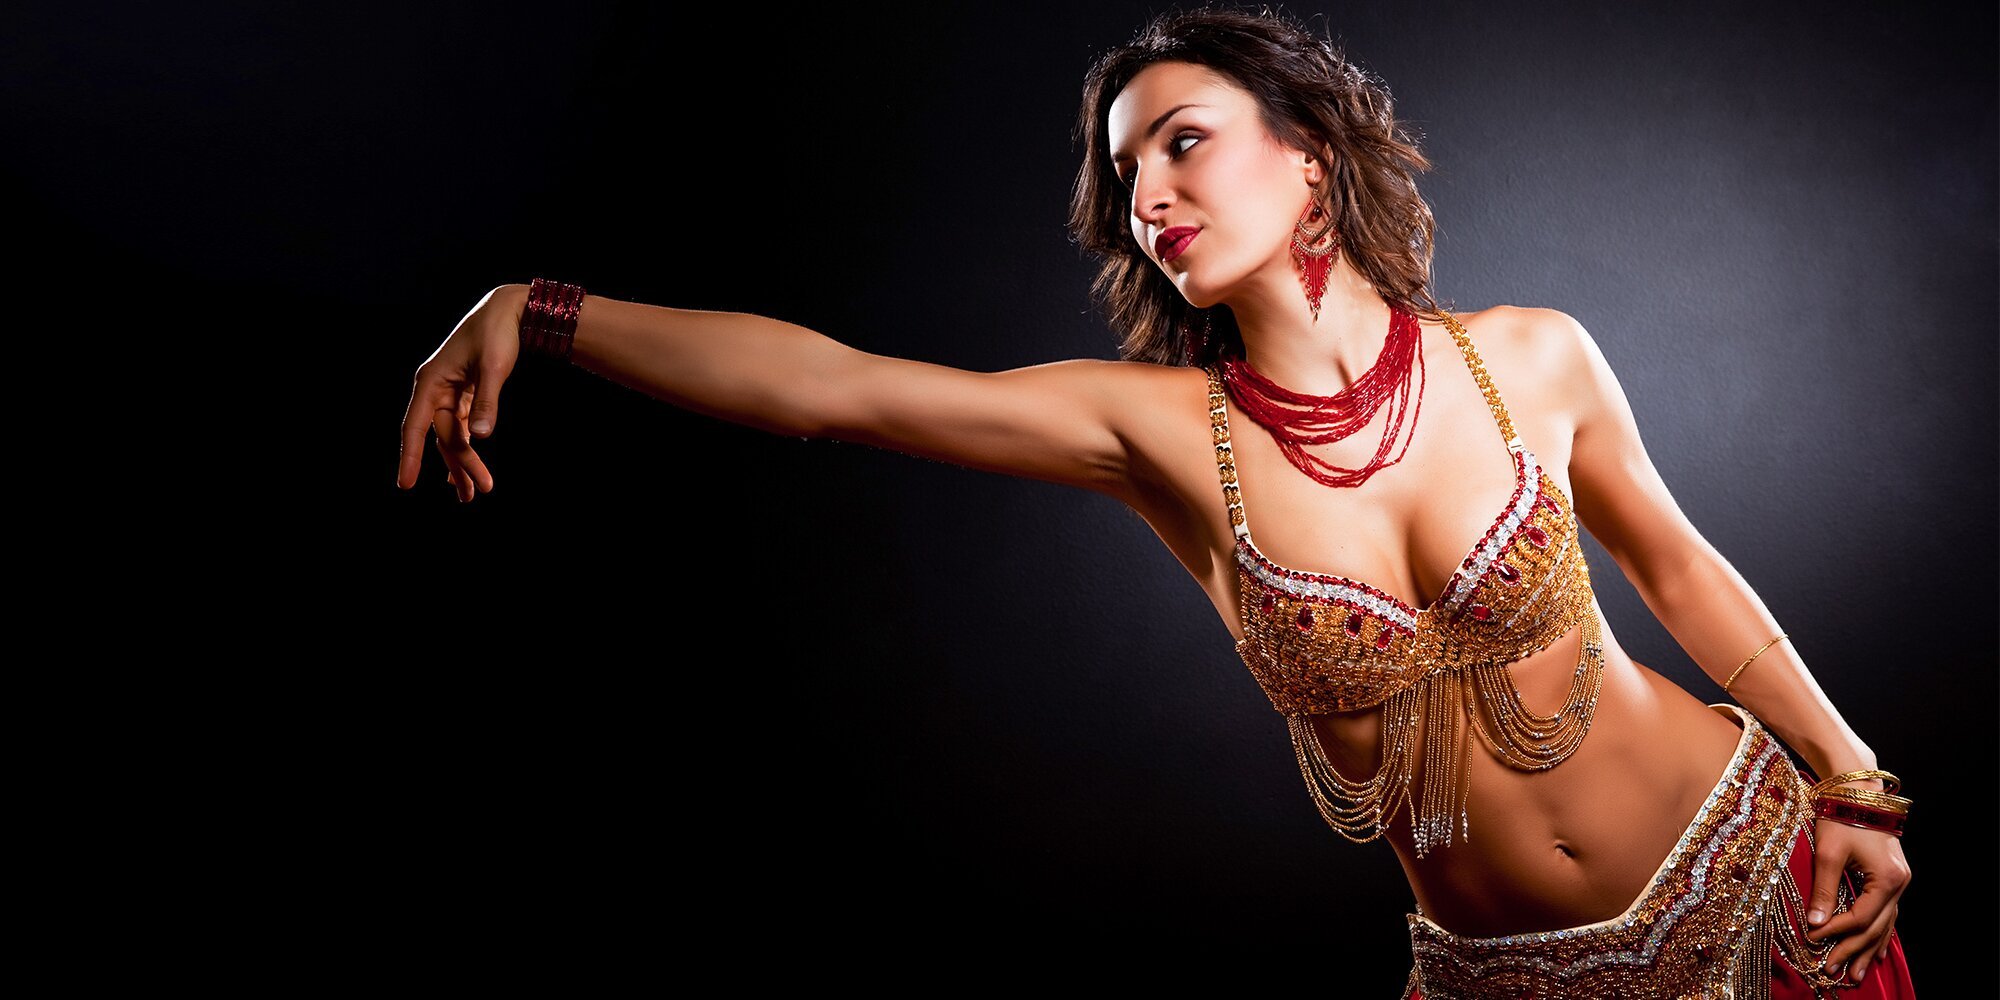 Арабские музыка живота. Бэлли дэнсер. Танцовщица Белли дэнс. Индийская танцовщица Белли дэнс.